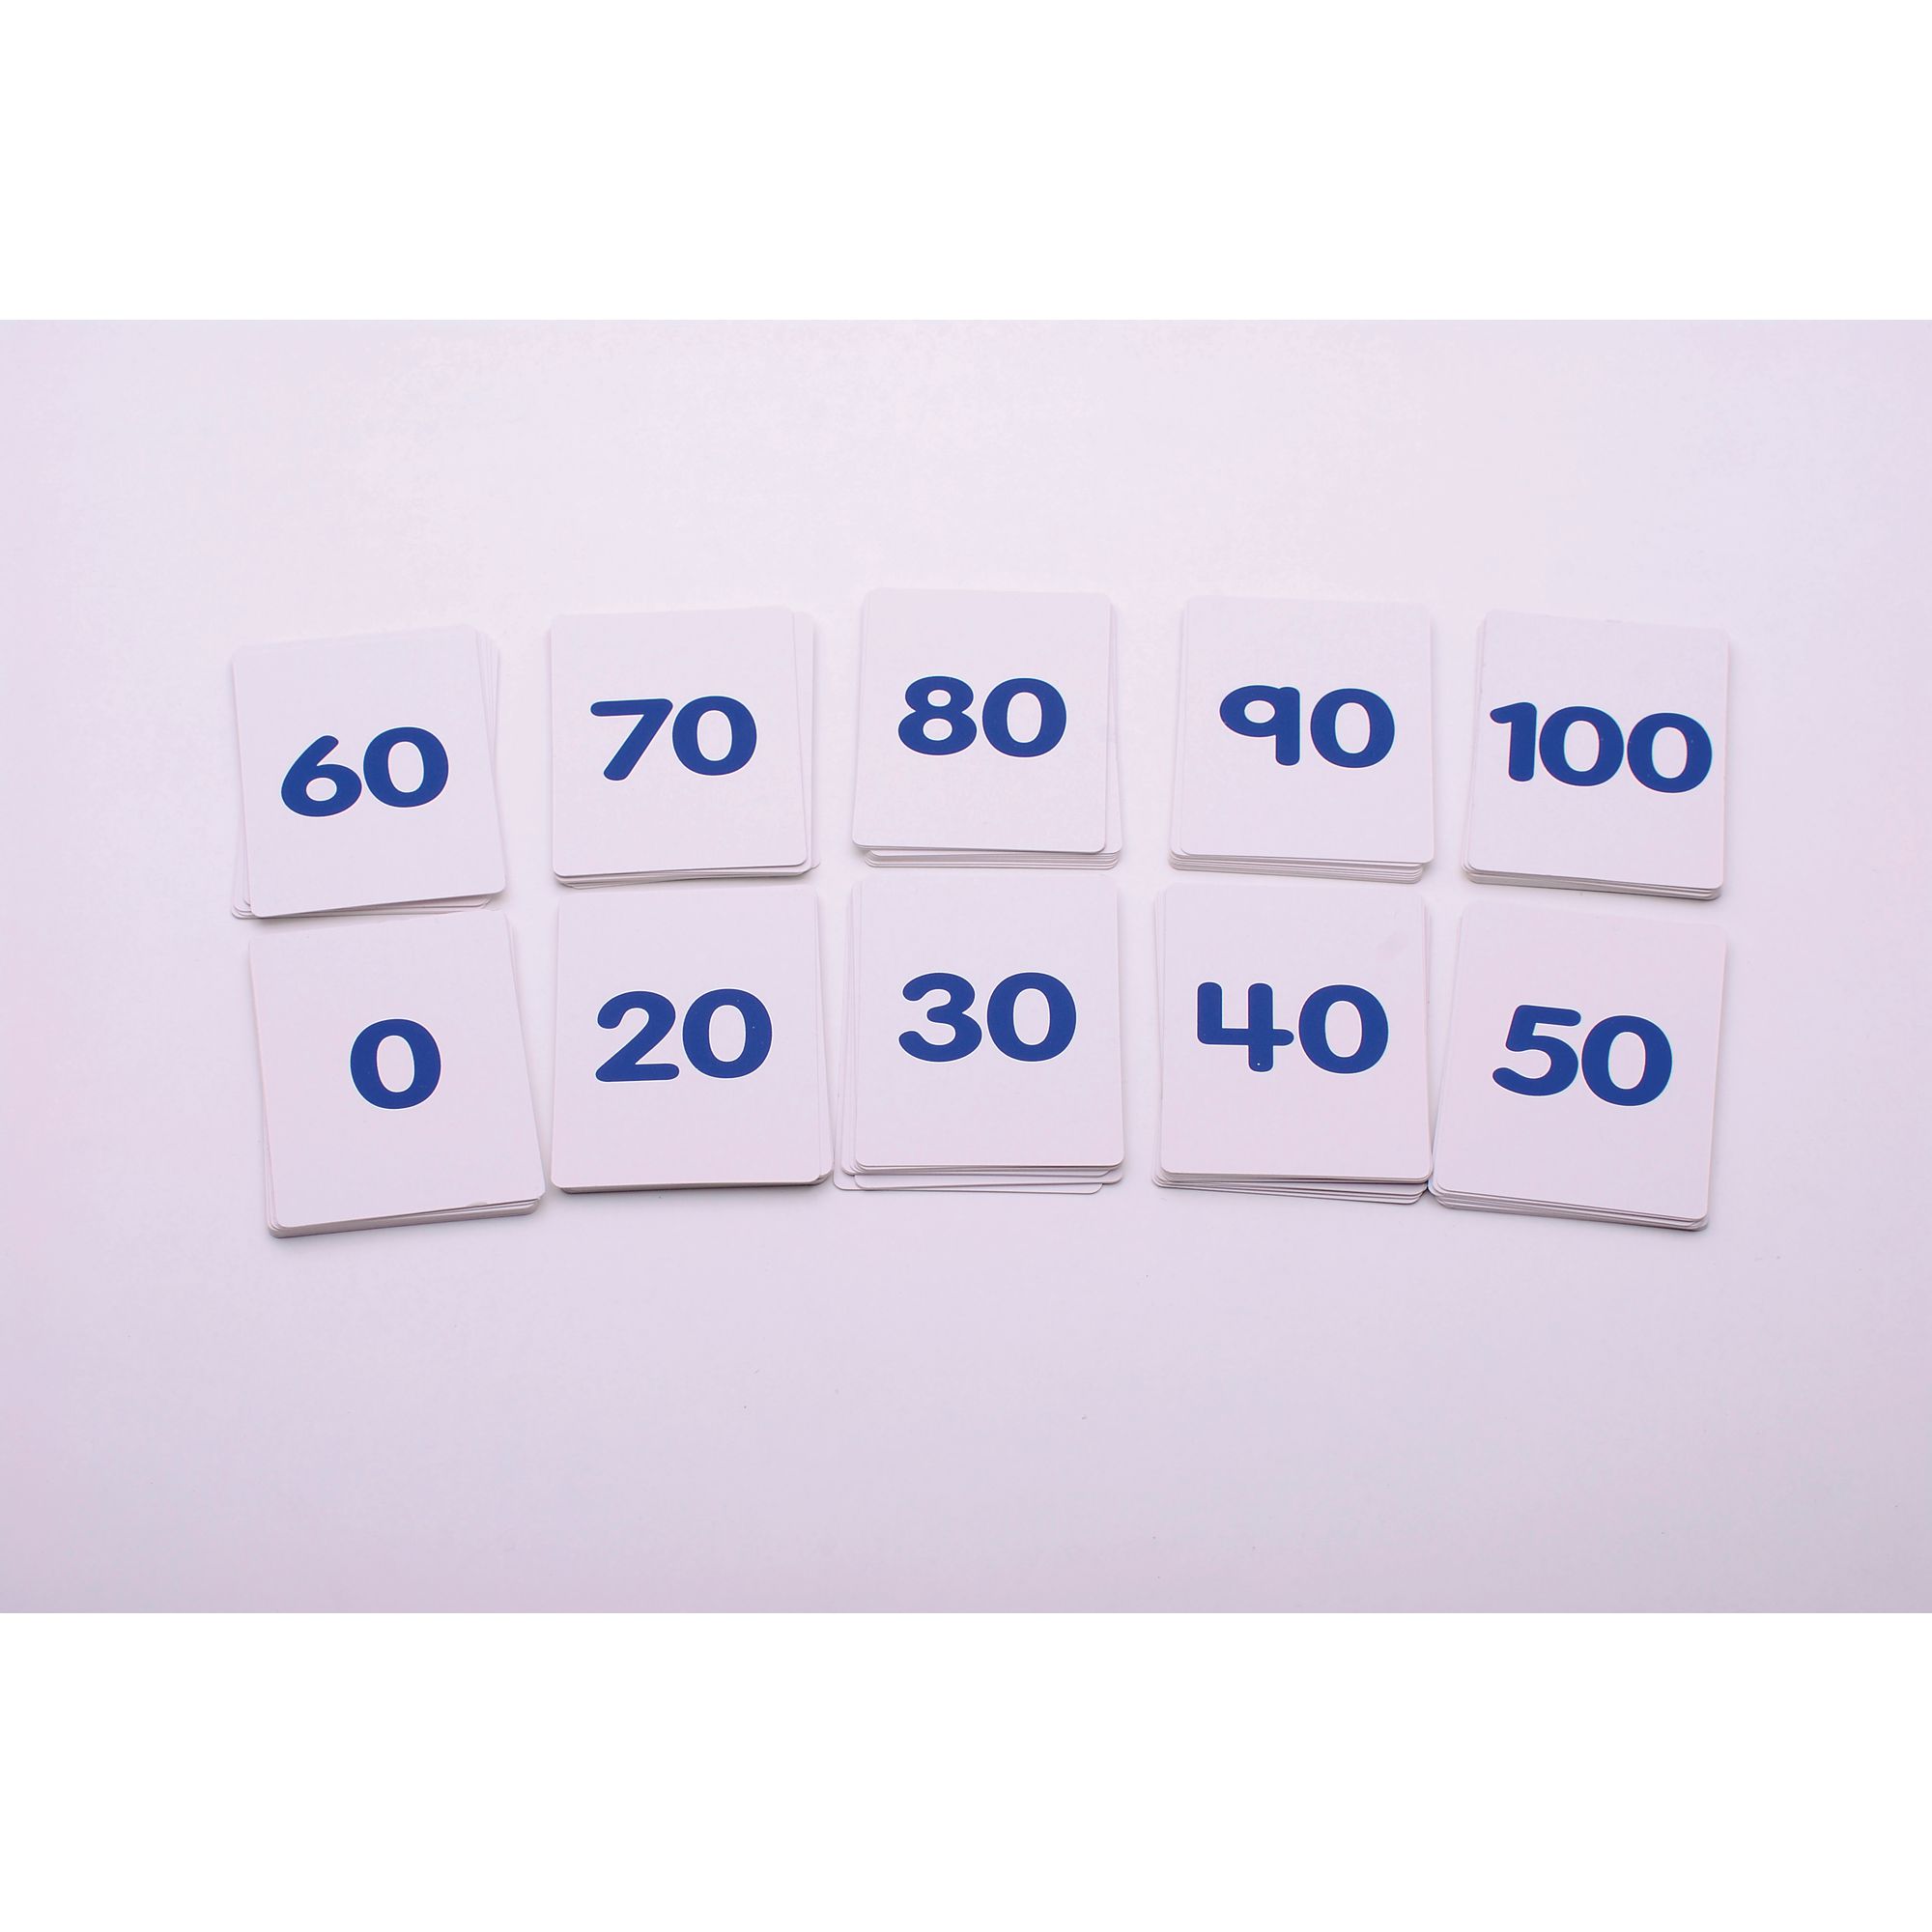 Number Cards 0-100 - 1 Set